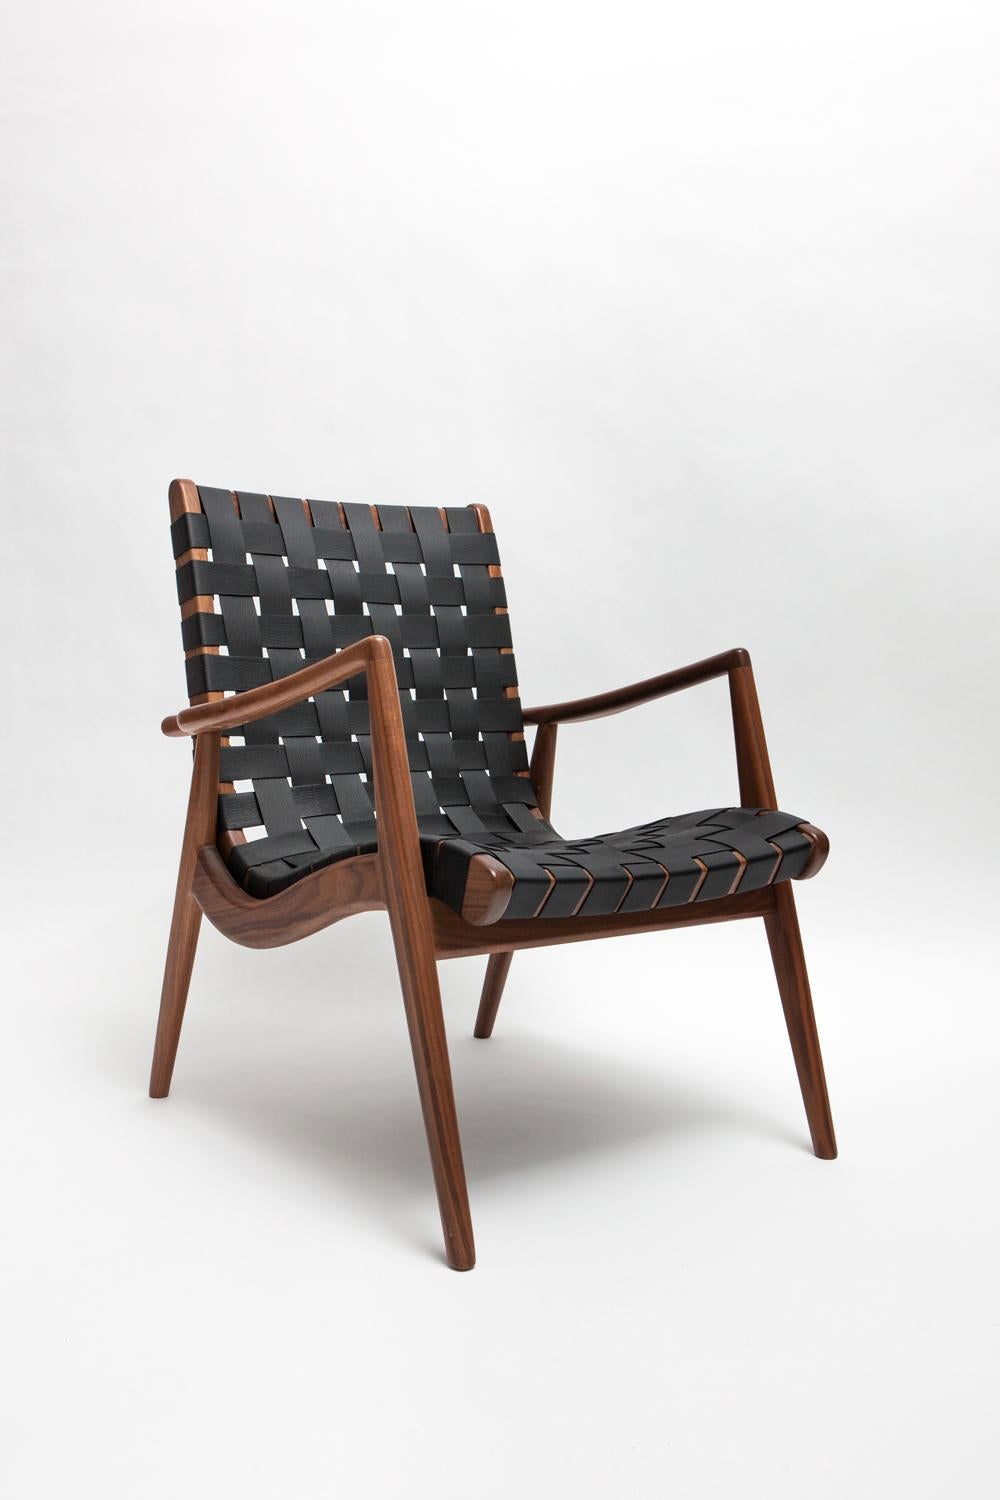 Conçue à l'origine par Mel Smilow en 1956 et officiellement réintroduite par sa fille Judy Smilow en 2013, la chaise longue en cuir tressé est d'un style classique du milieu du siècle. La beauté simpliste, la finesse de l'artisanat et les détails